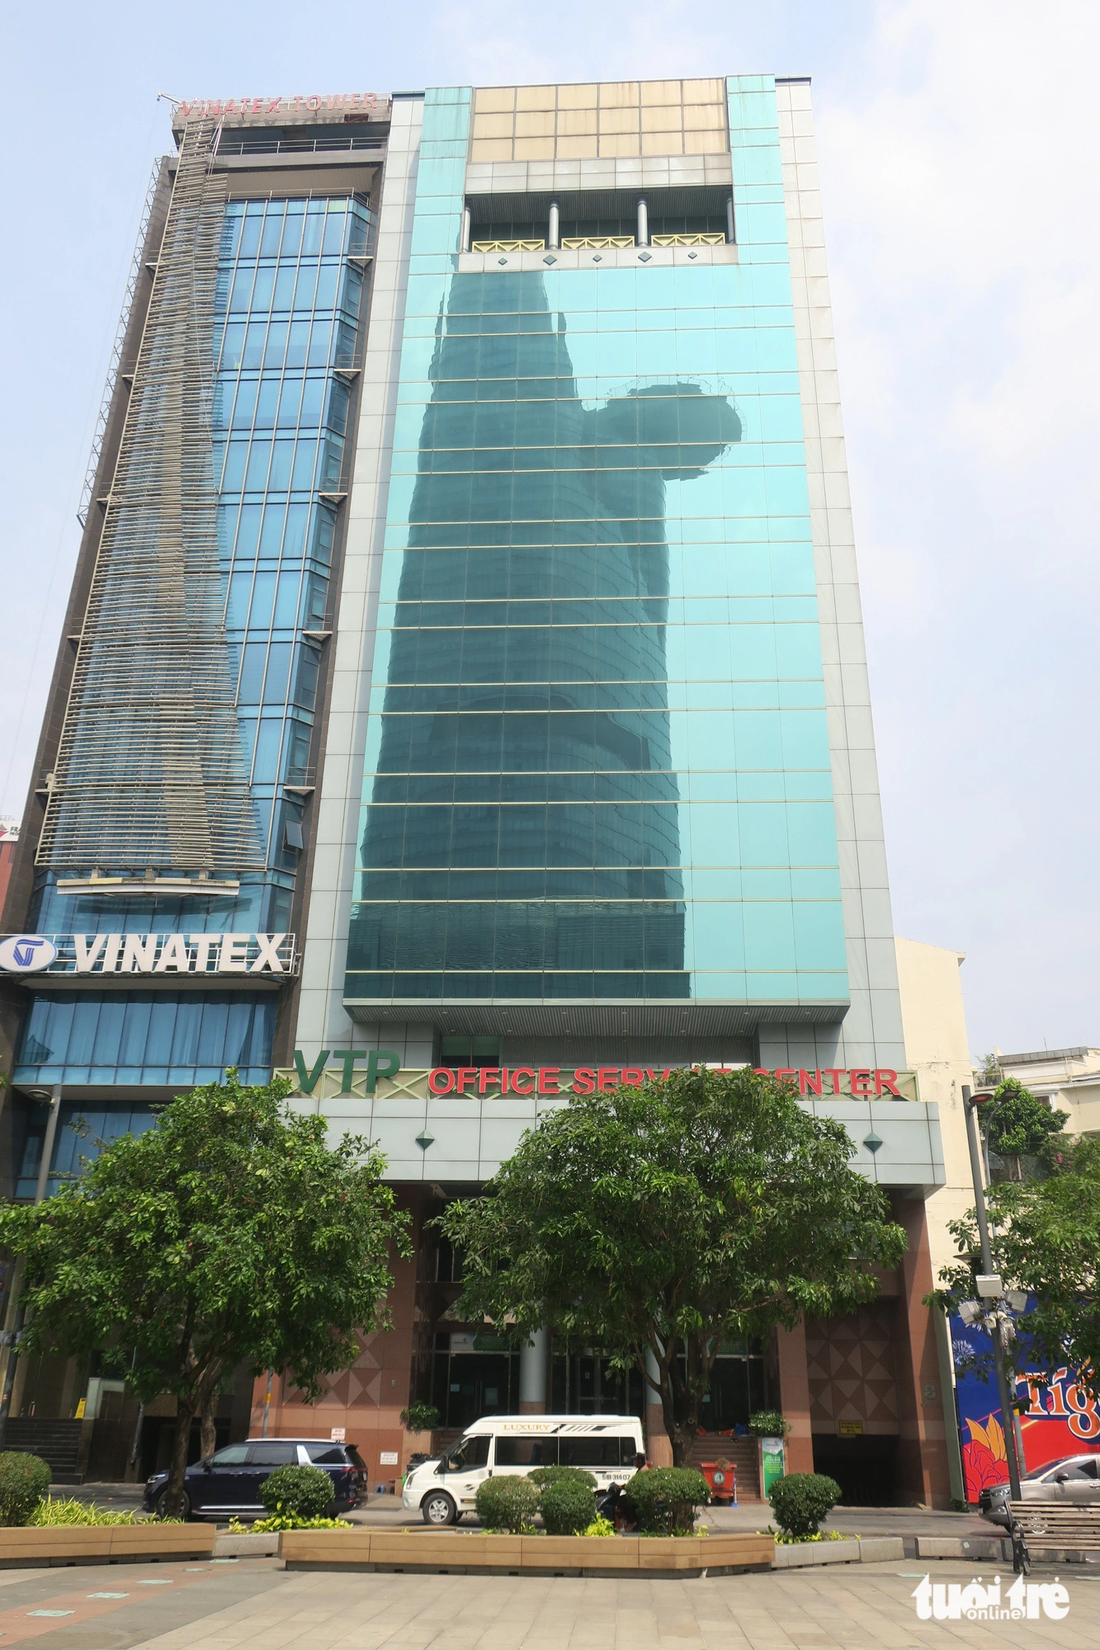 Trung tâm dịch vụ văn phòng VTP tại tòa nhà VTP Building, số 8 Nguyễn Huệ, quận 1, TP.HCM - Ảnh: T.T.D.